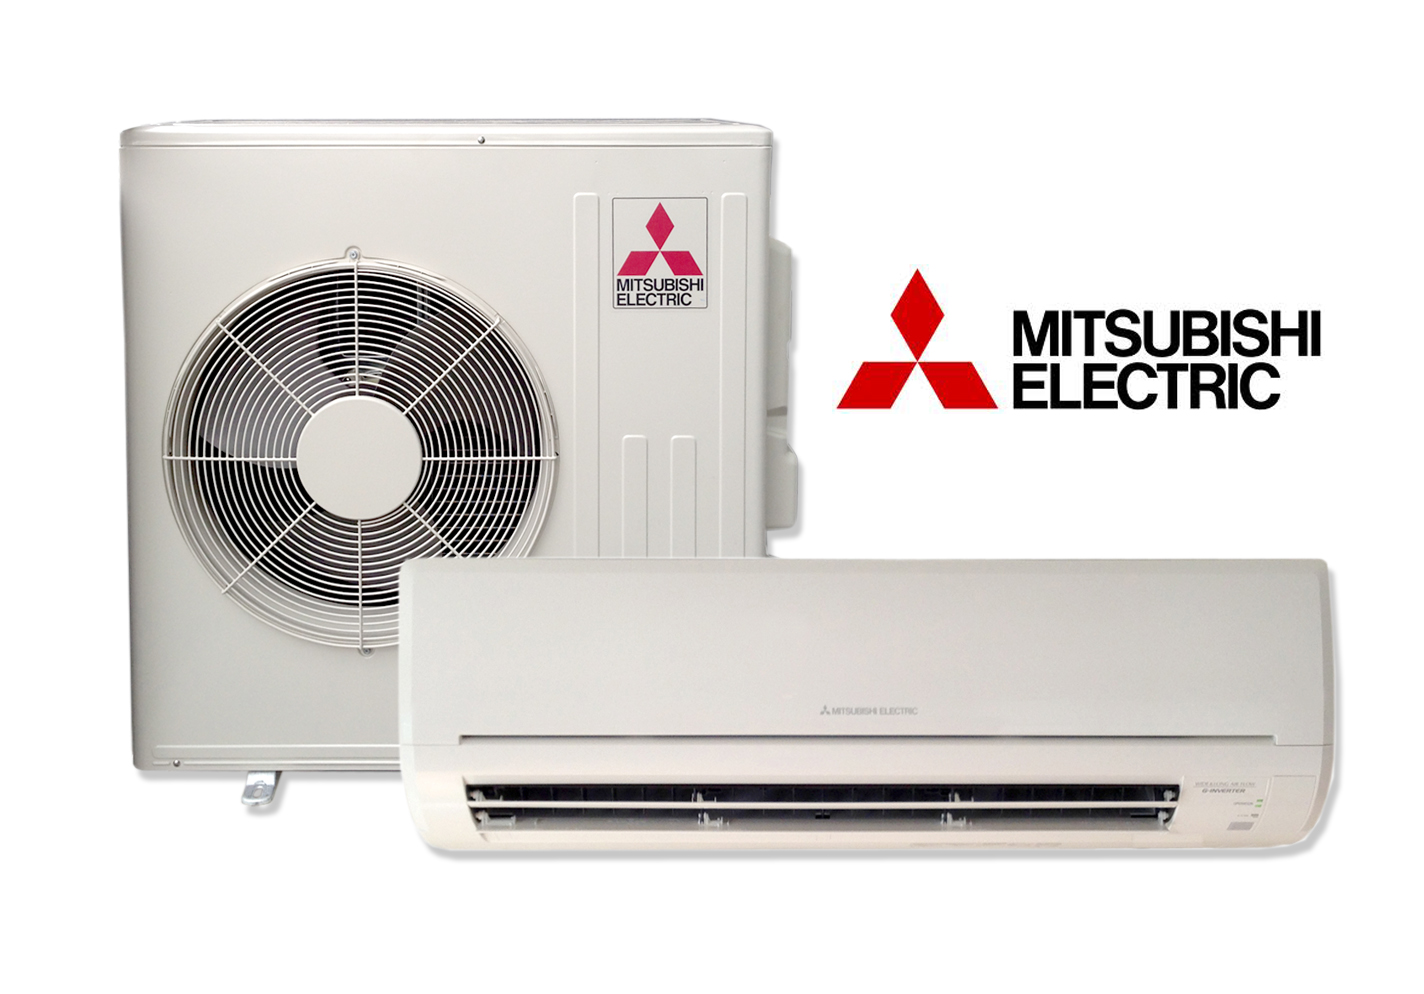 Debo comprar mi aire acondicionado con instalación profesional? - Blog de Aire  Acondicionado Mitsubishi Electric · LowCostClima